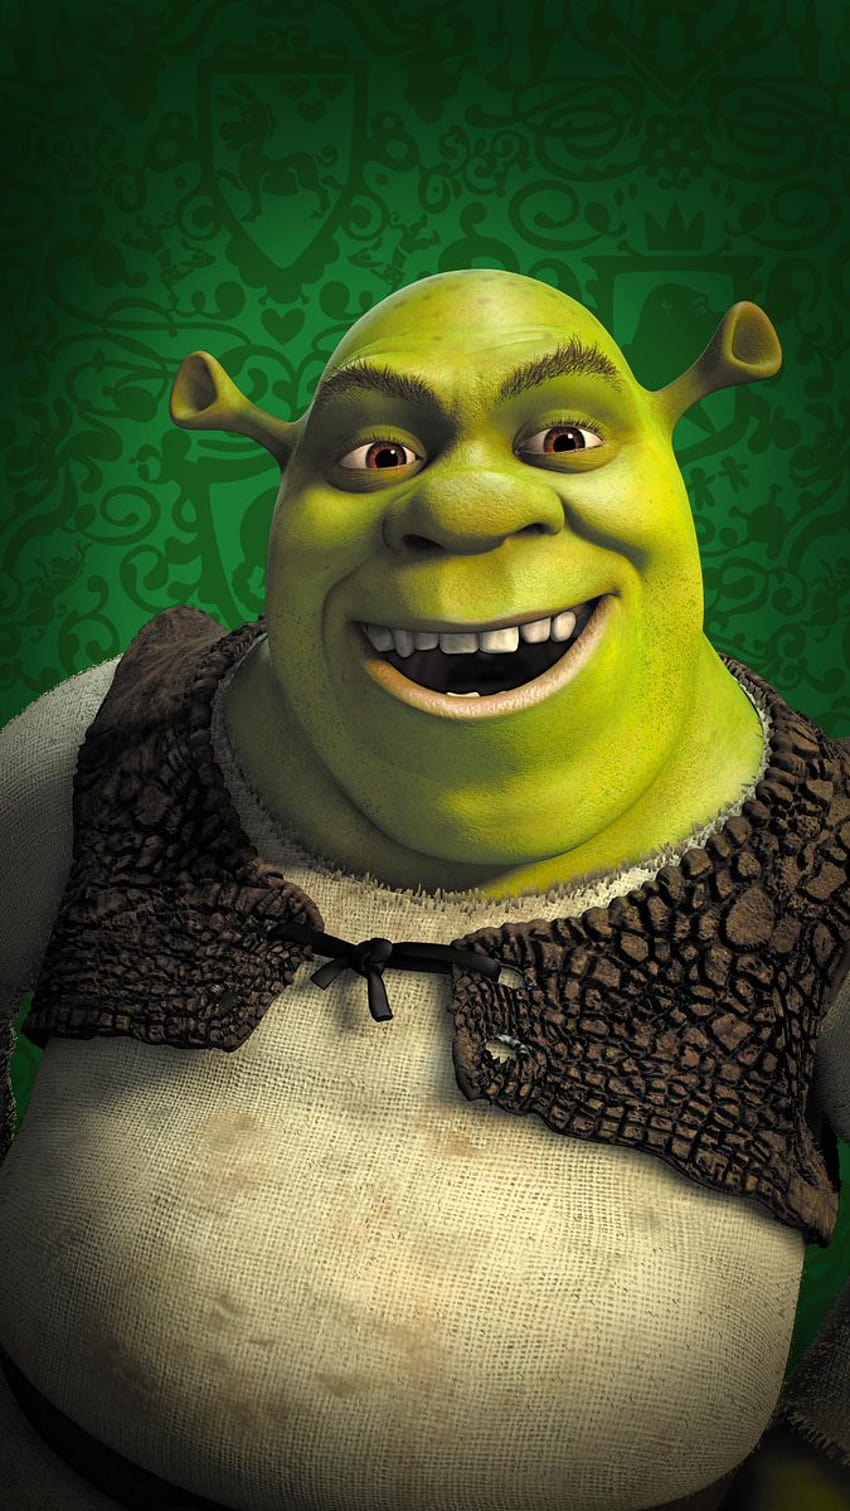 Telepon Shrek wallpaper ponsel HD